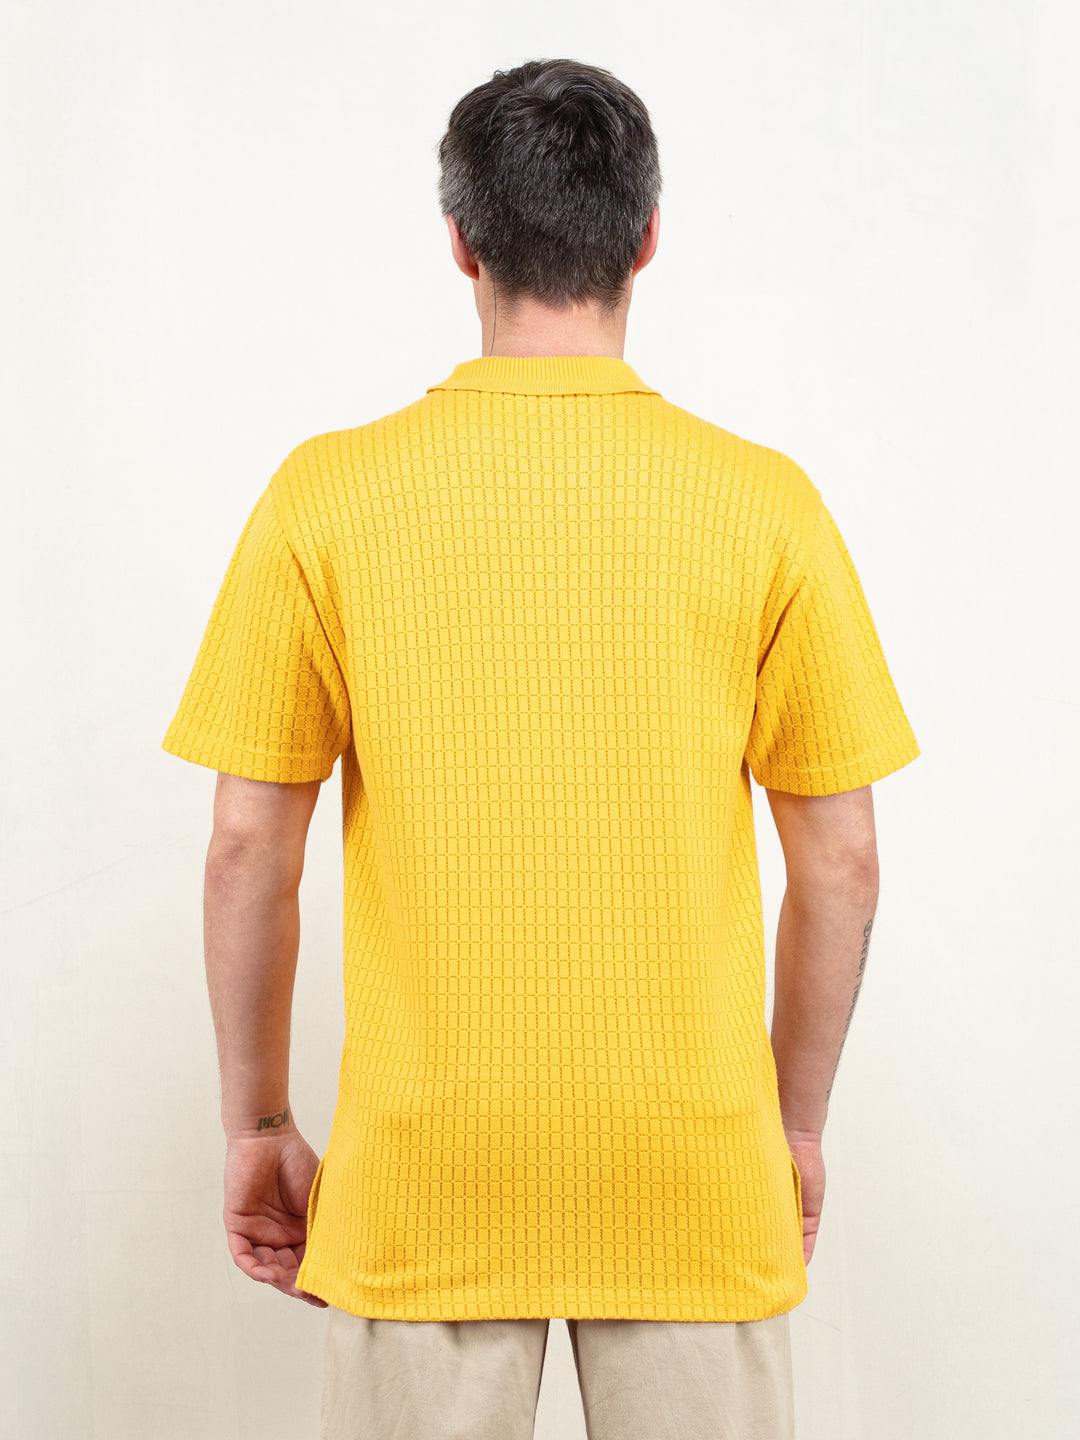 Men Knitted T-shirt 80s yellow cotton knit zip neck collared polo shirt men sun yellow short sleeve polo shirt summer t-shirt size medium